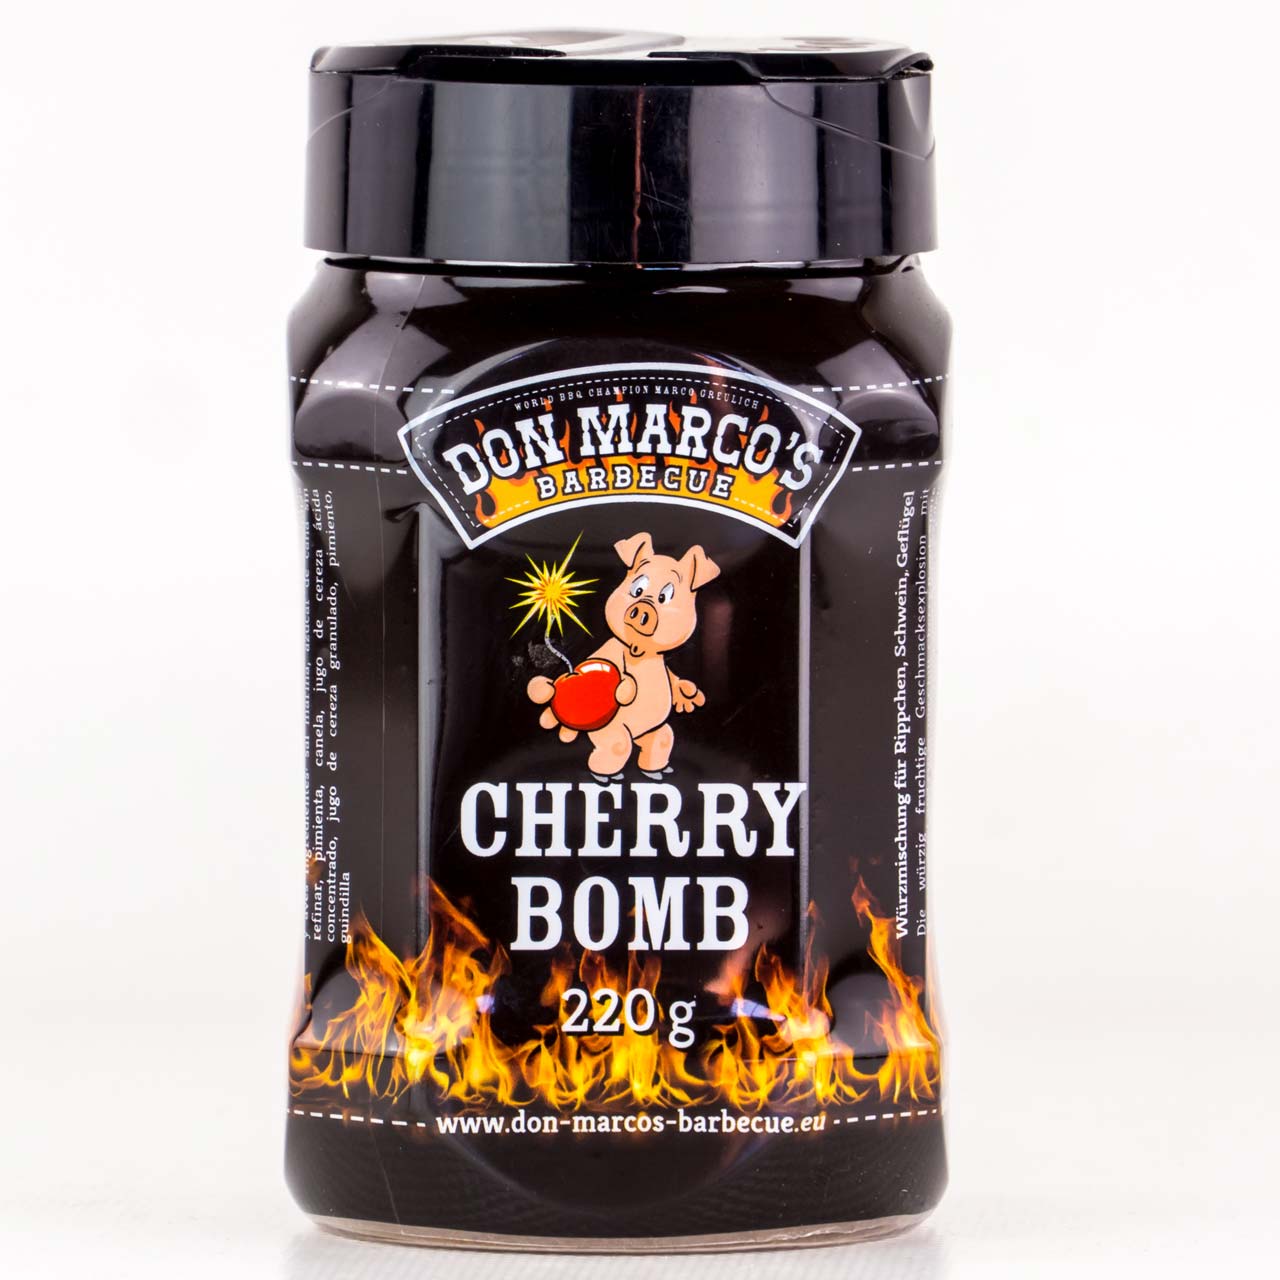 Don Marco's Cherry Bomb